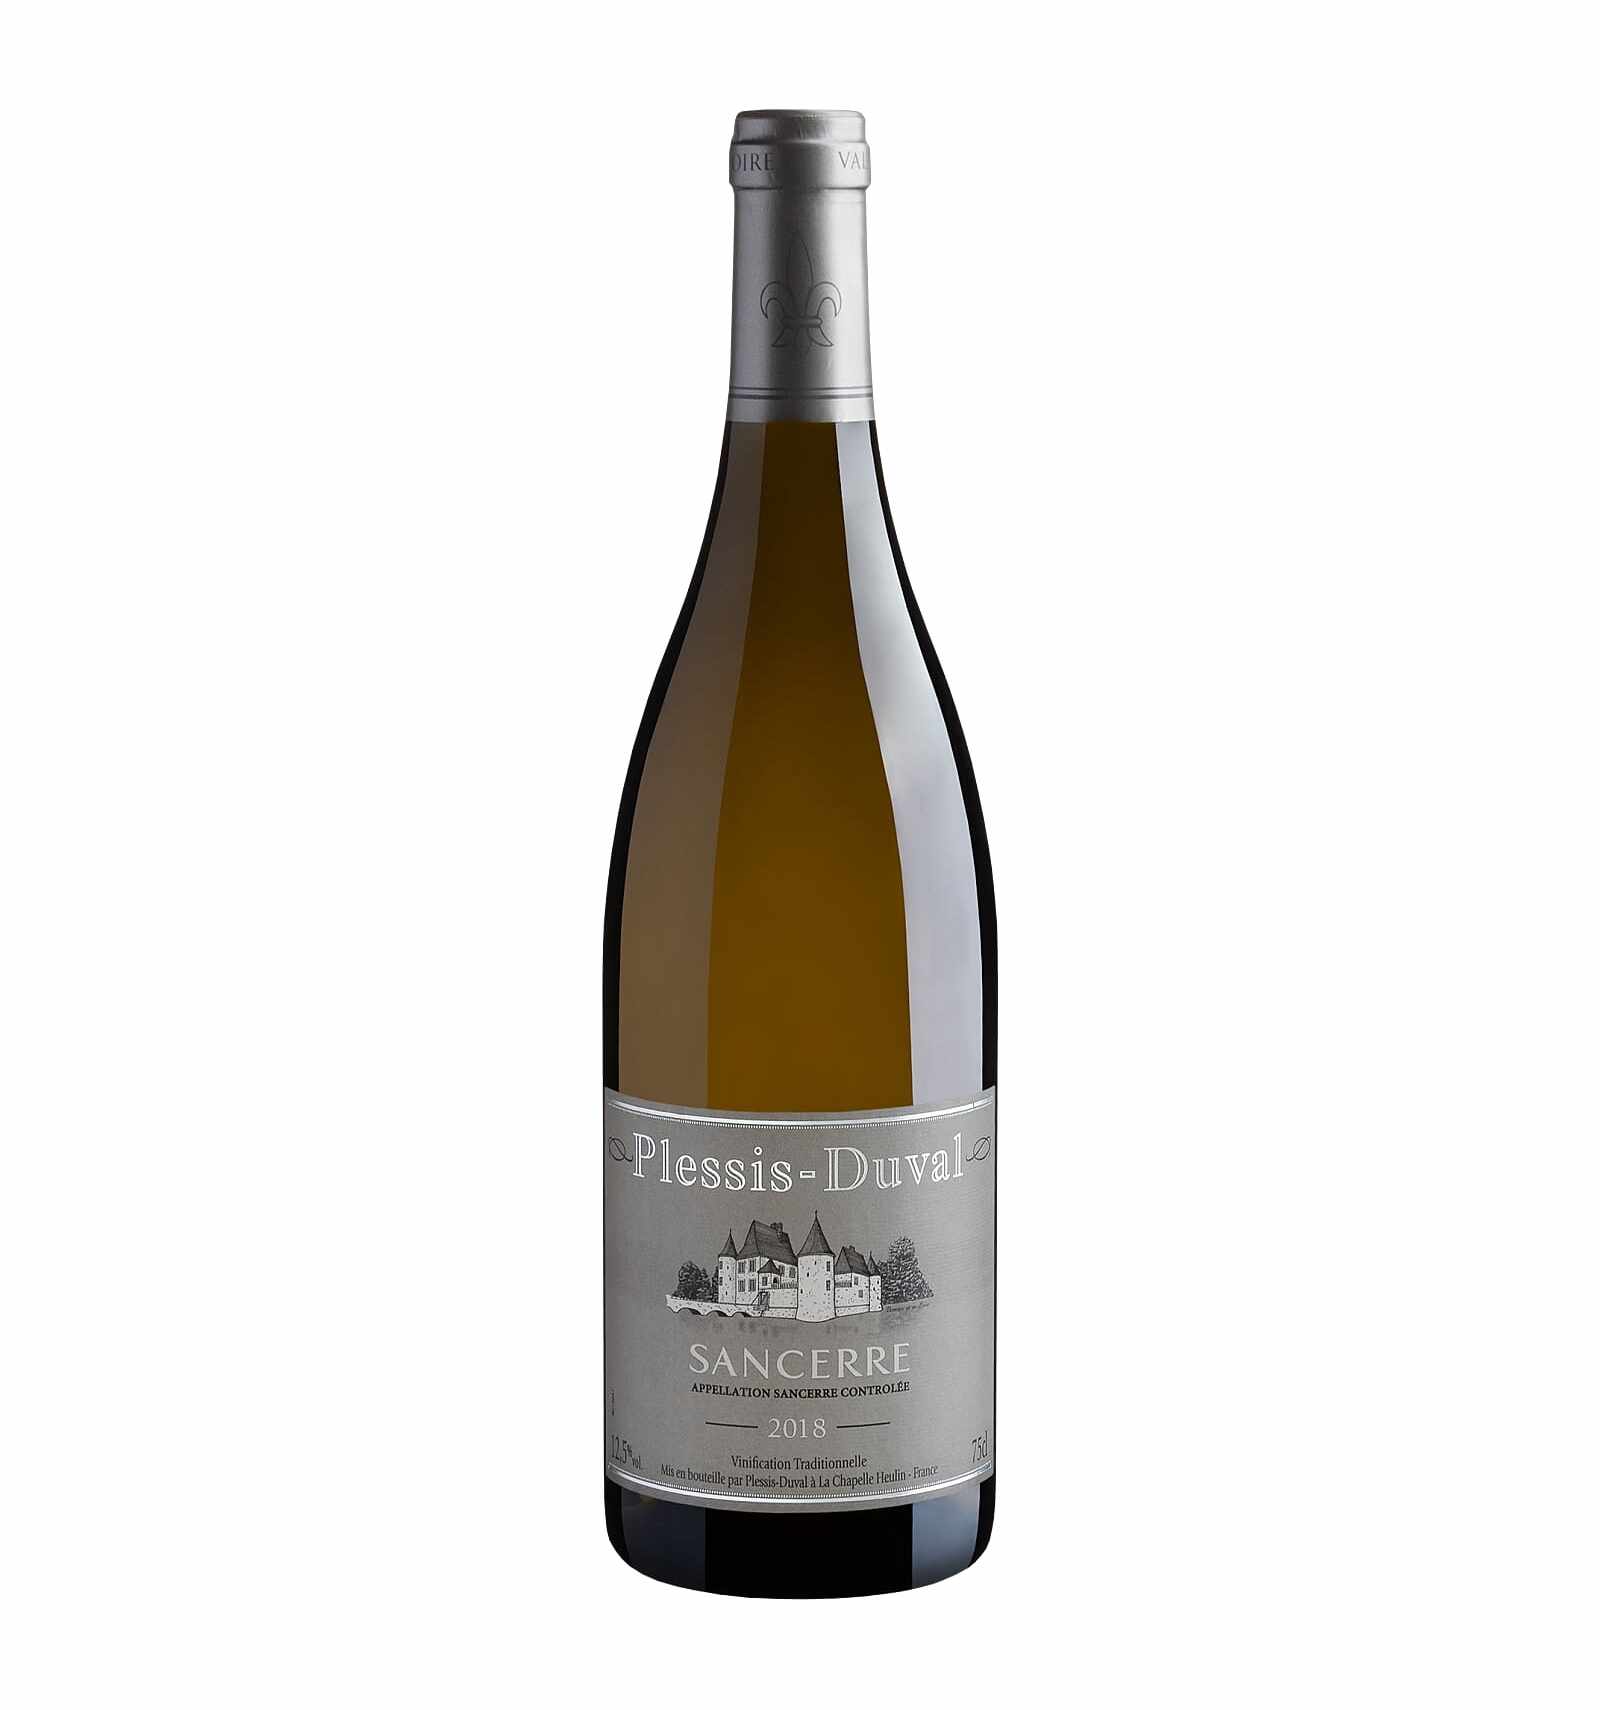 Vin alb, Plessis Duval Sancerre, 12% alc., 0.75L, Franta